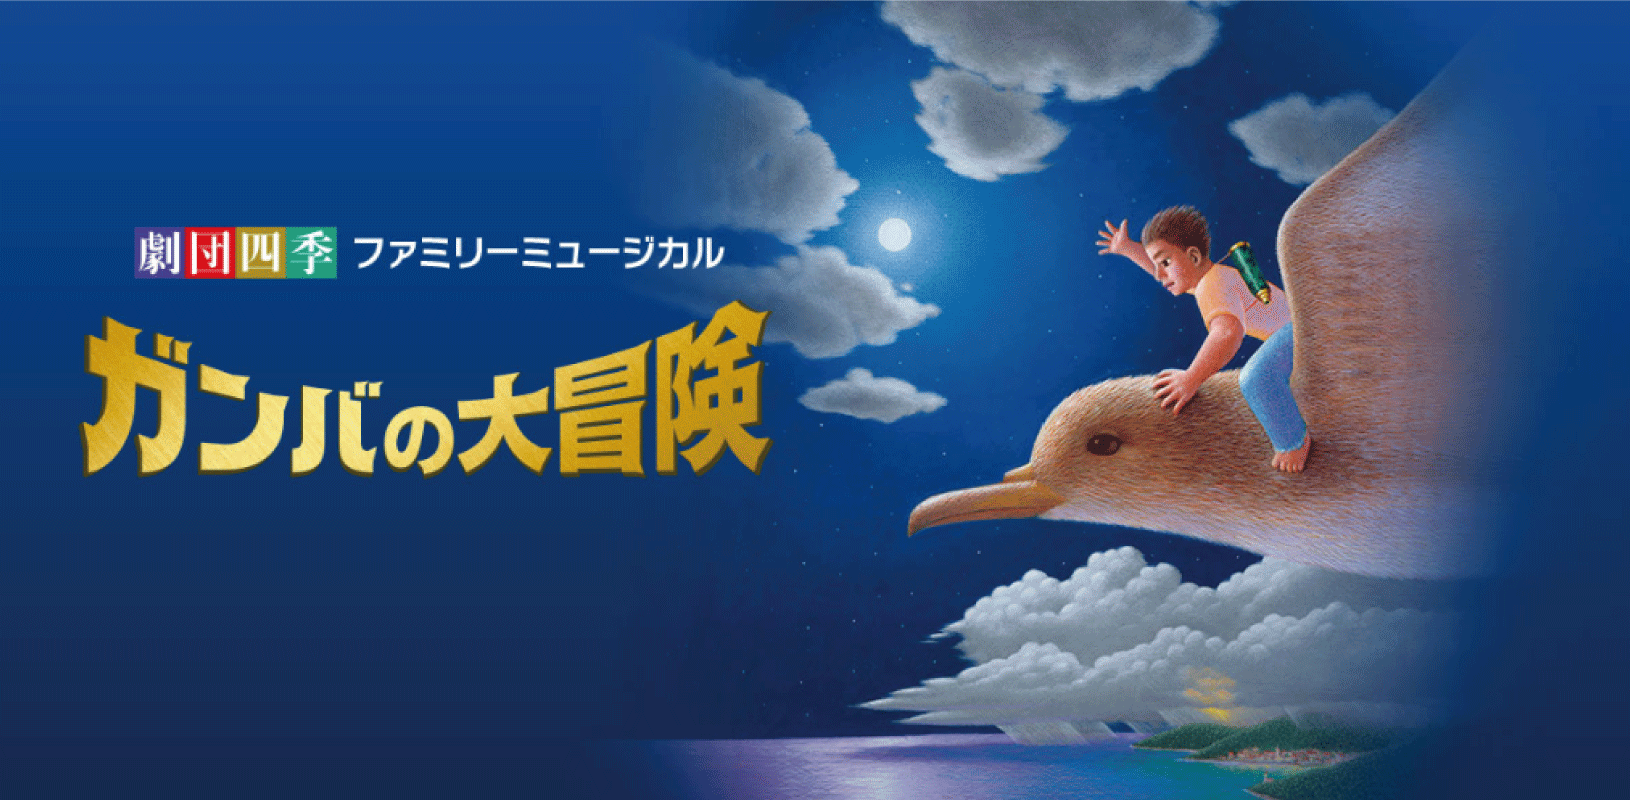 劇団四季ファミリーミュージカル『ガンバの大冒険』